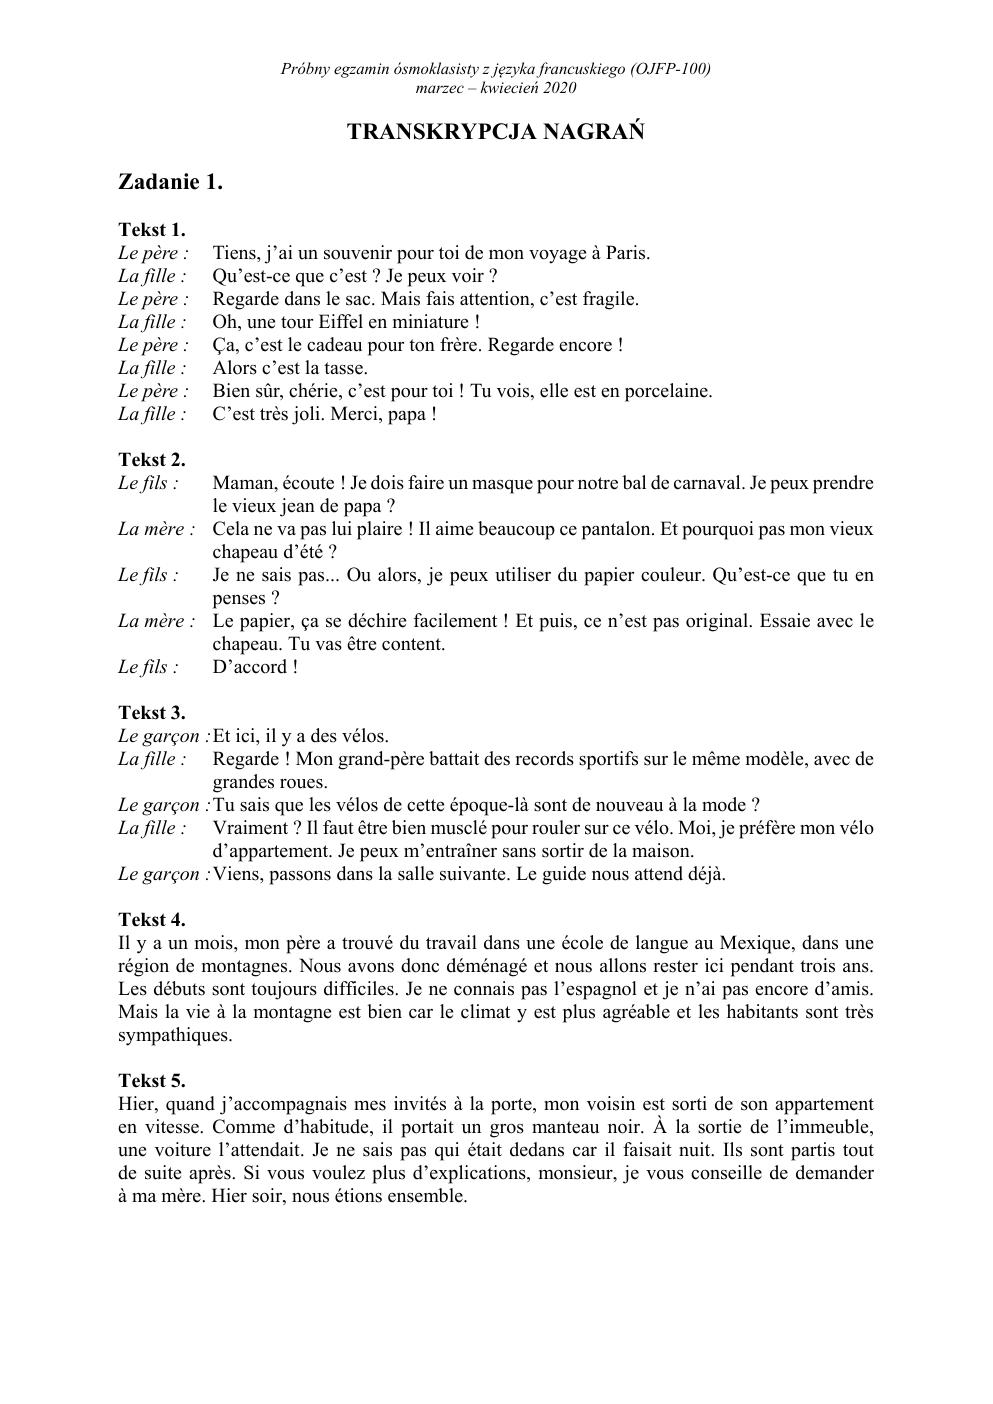 transkrypcja - francuski - egzamin ósmoklasisty 2020 próbny-1